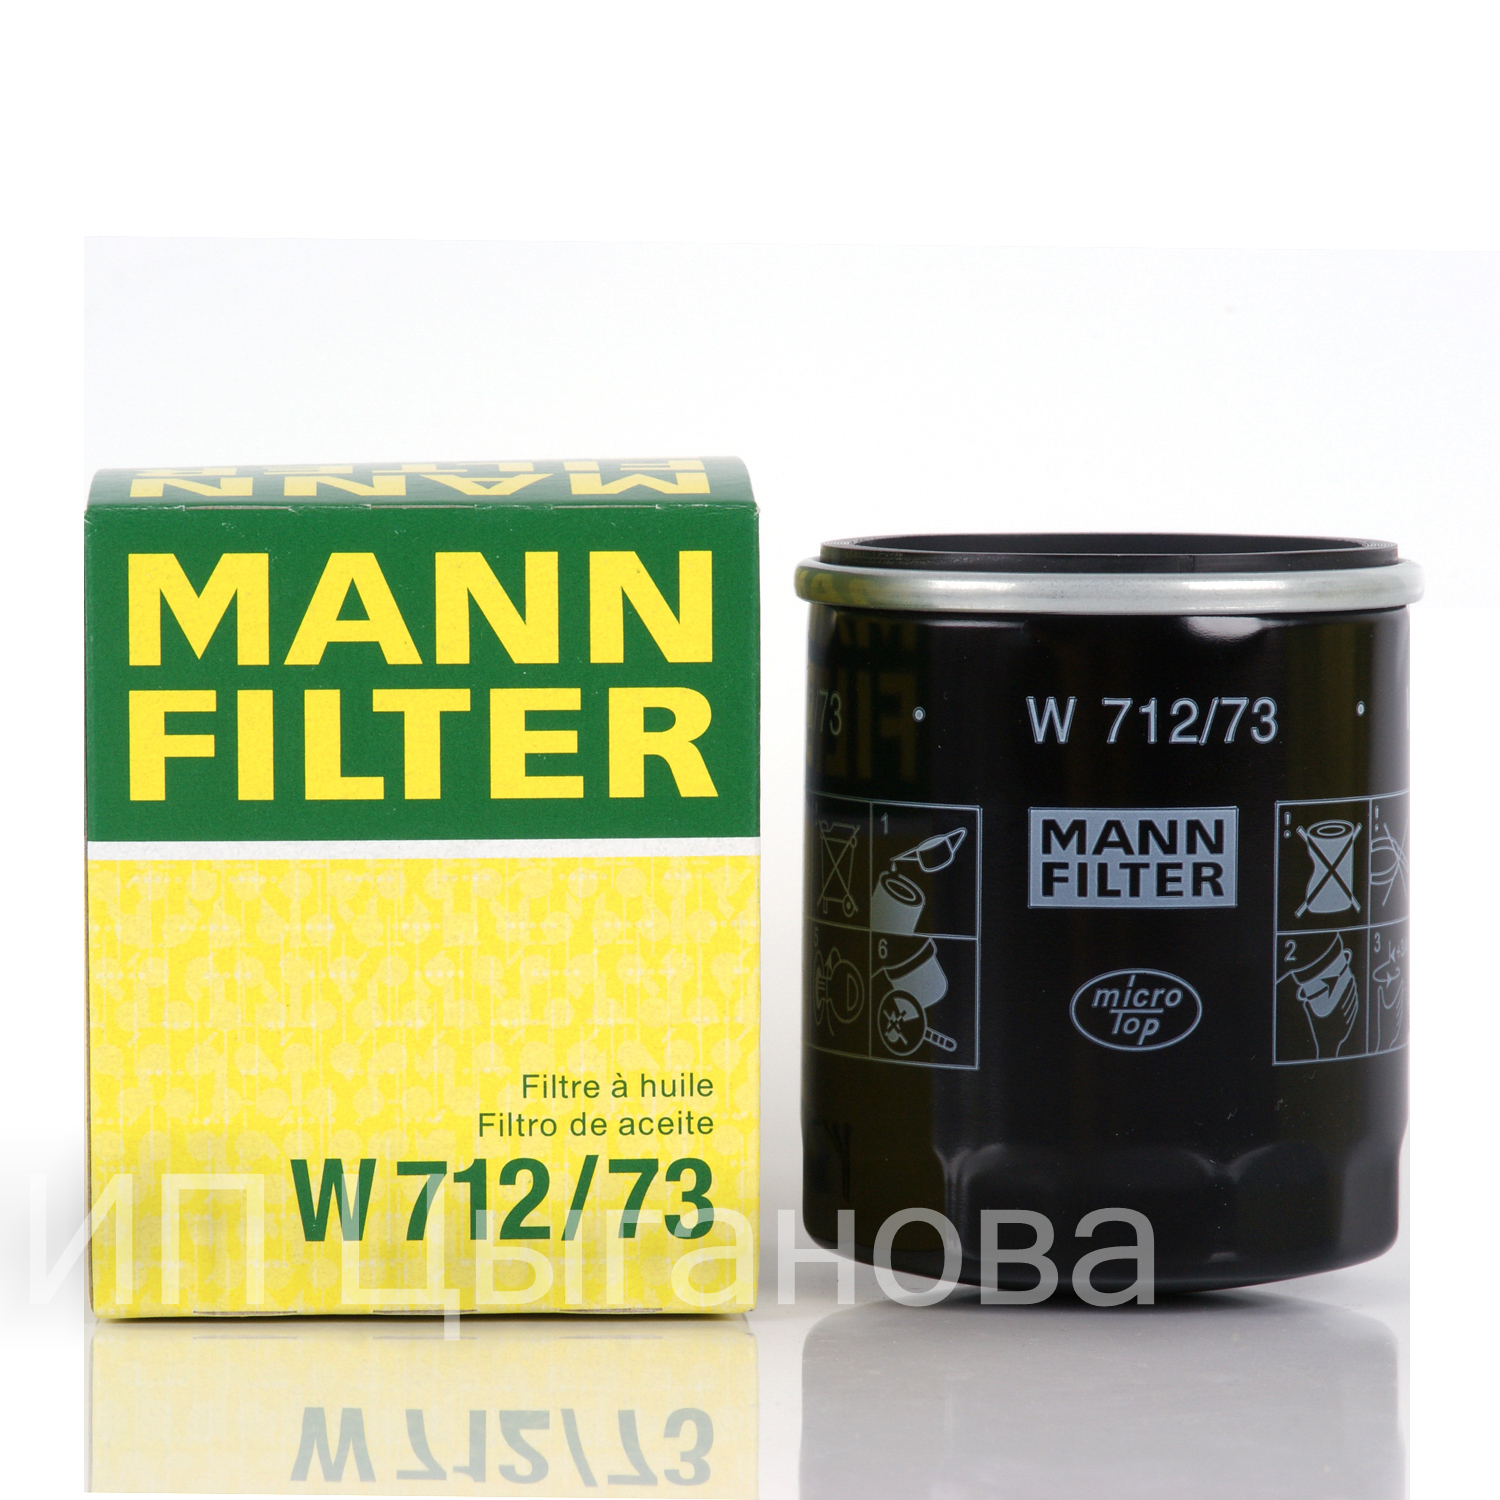 MANN FILTER   . W712/73